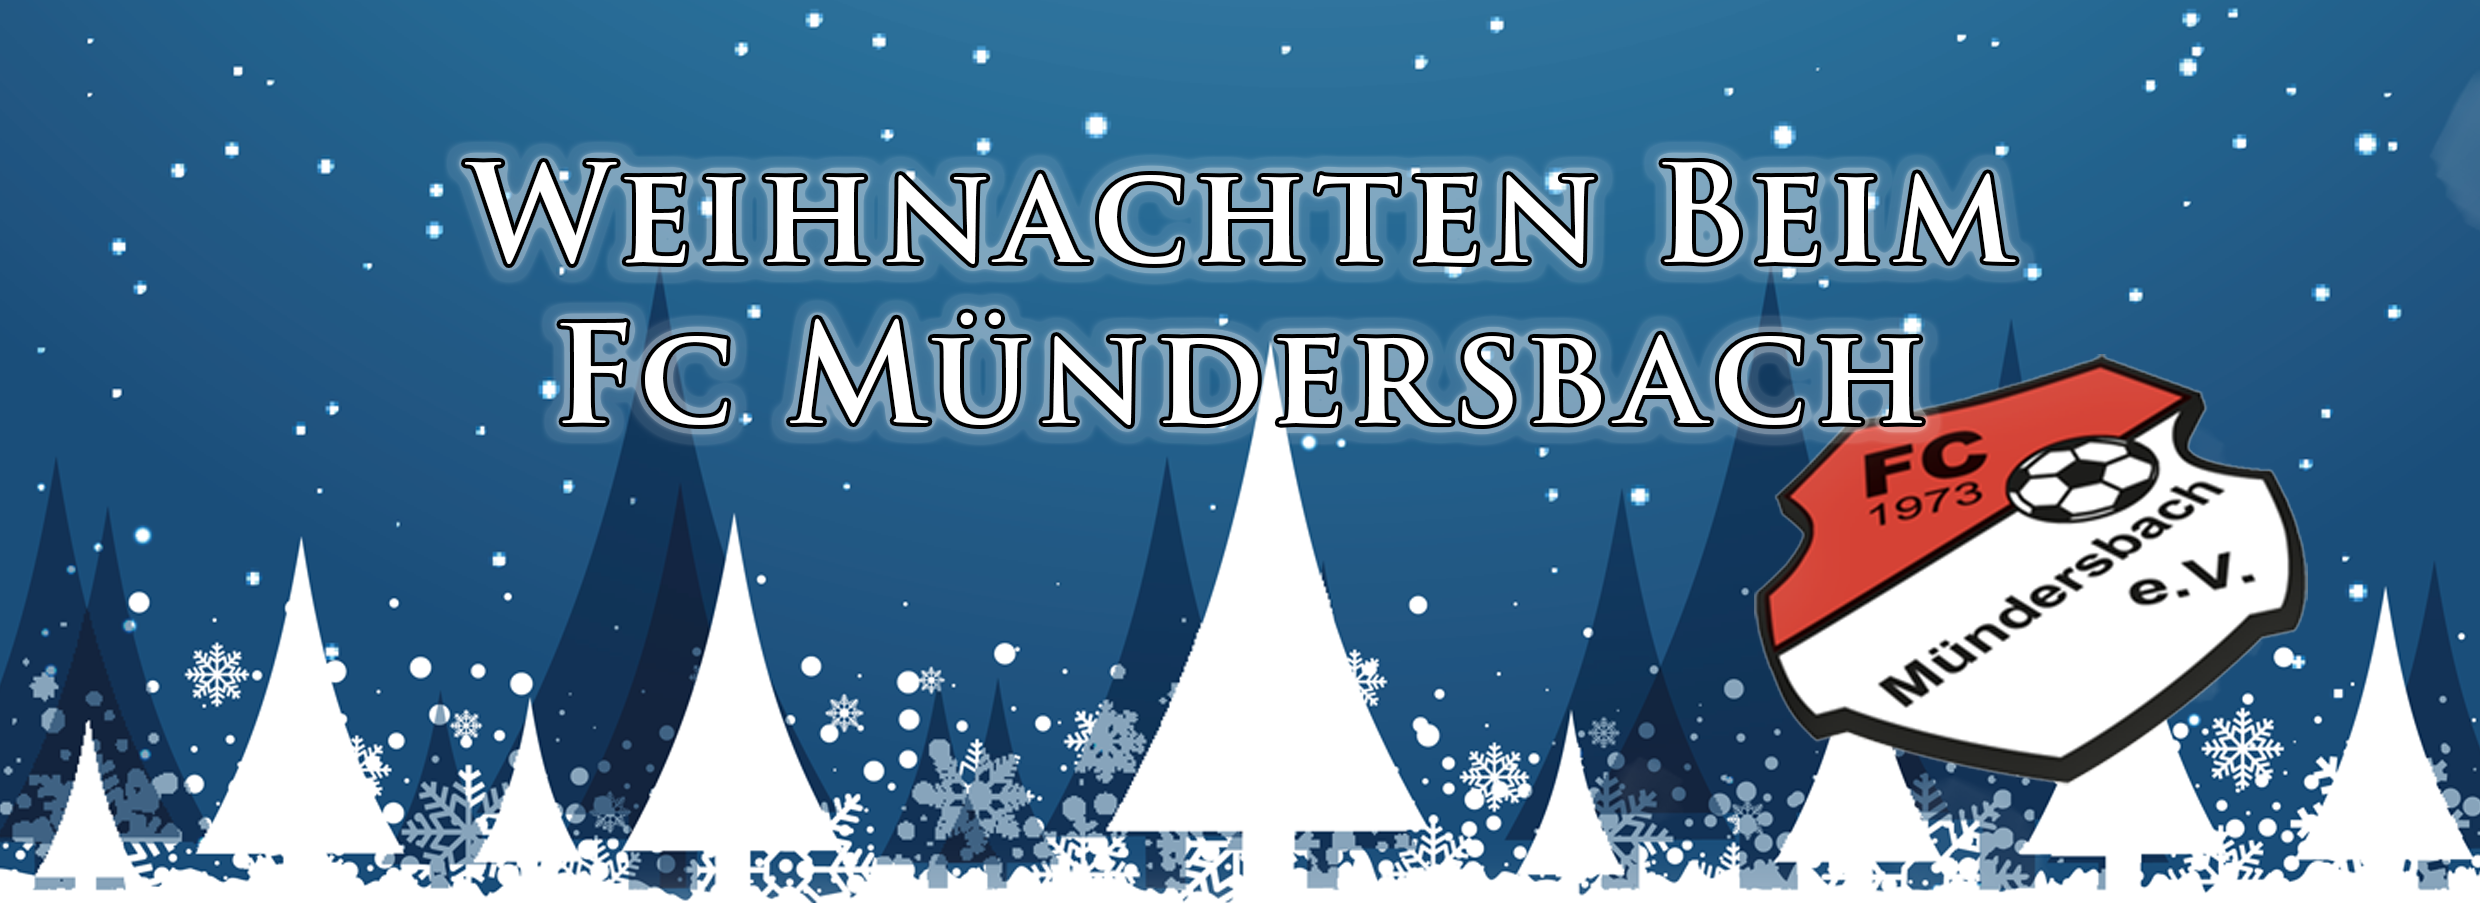 Grafik mit weißen Weihnachtsbäumen auf blauem Hintergrund. Text: Weihnachten beim FC Mündersbach